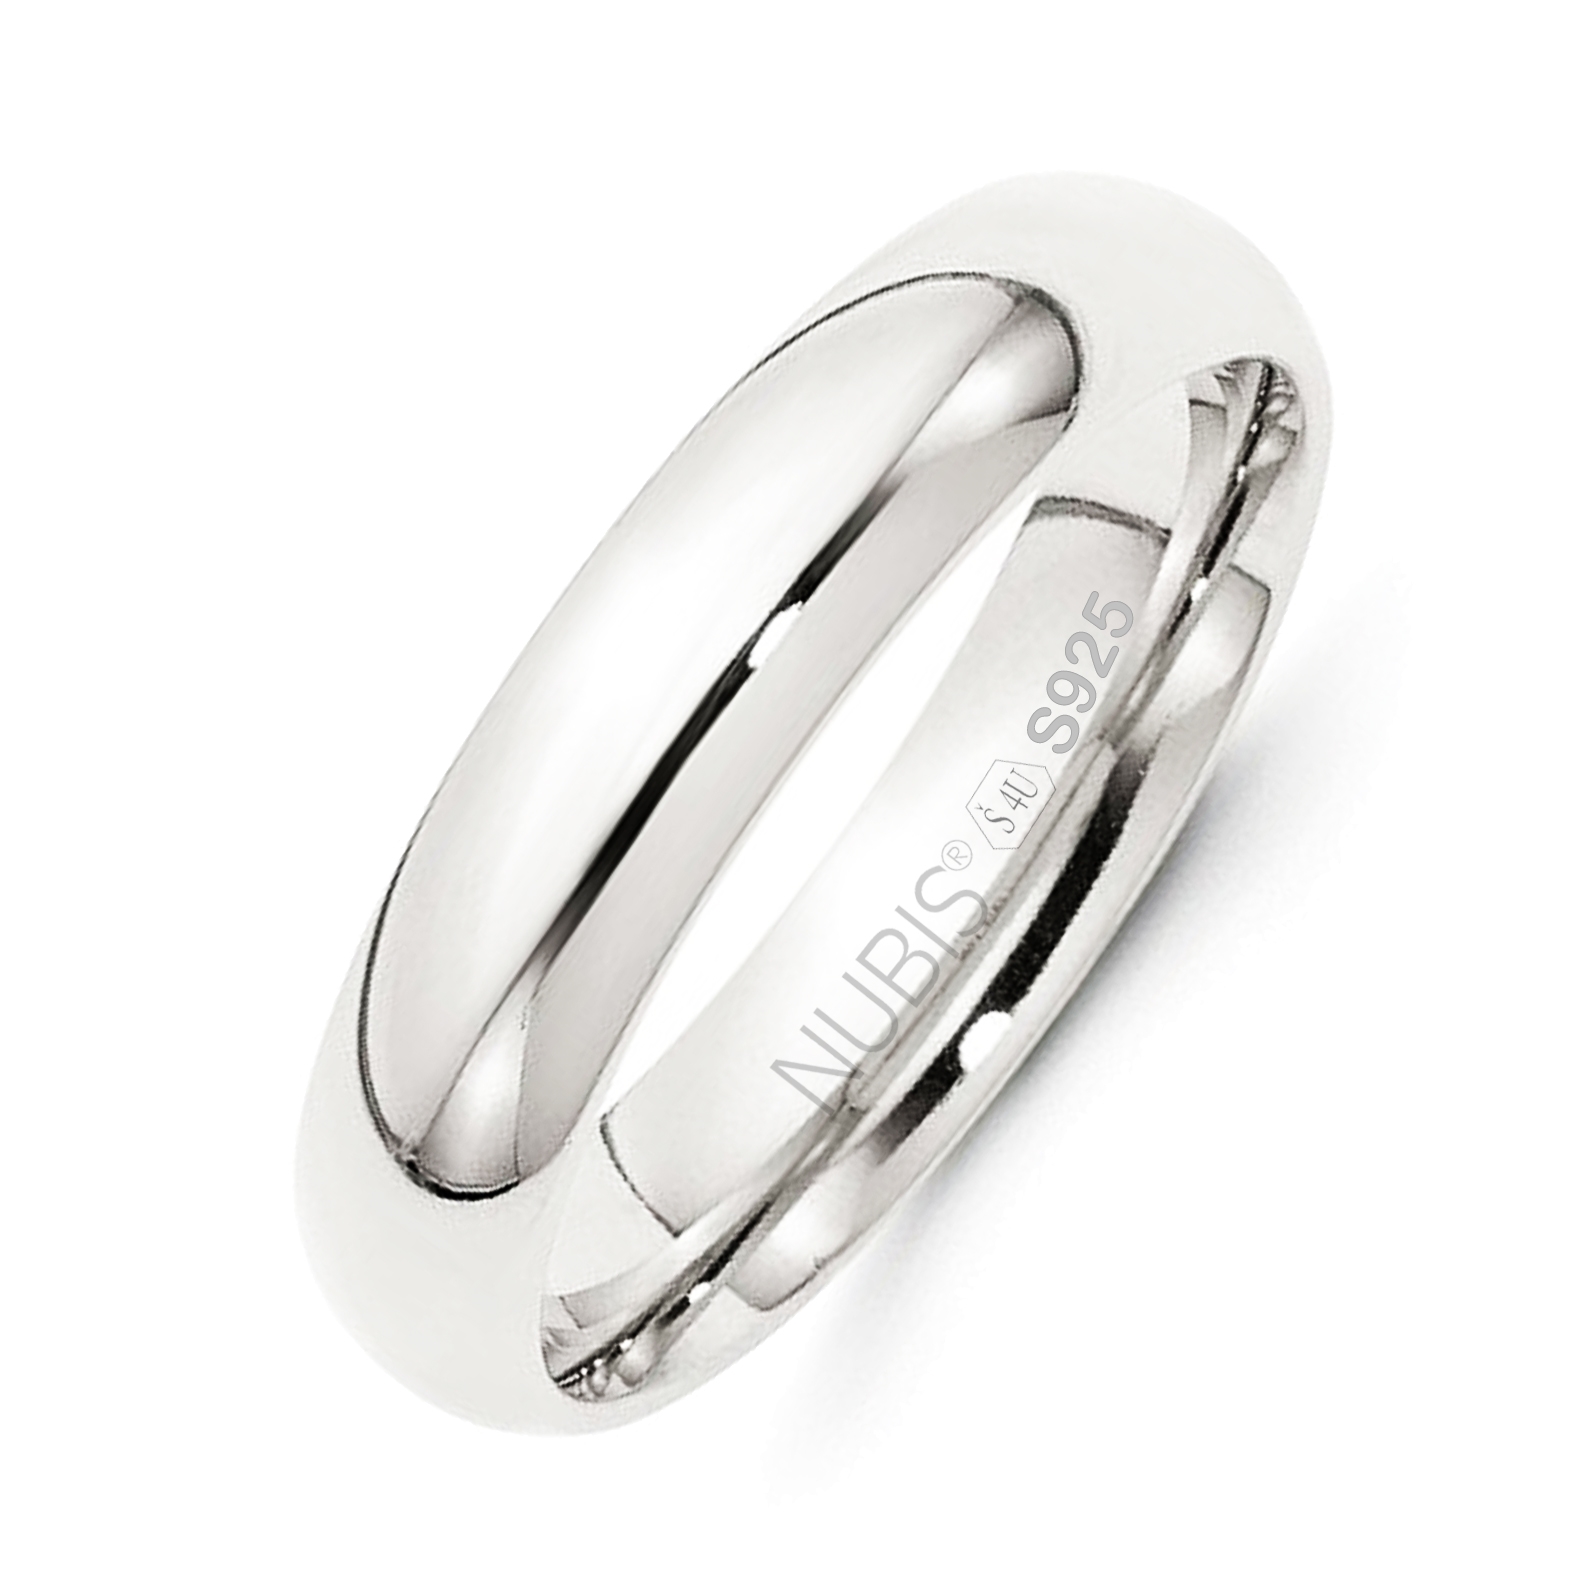 NUBIS® NB101-5 Stříbrný snubní prsten šíře 5 mm - velikost 55 - NB101-5-55